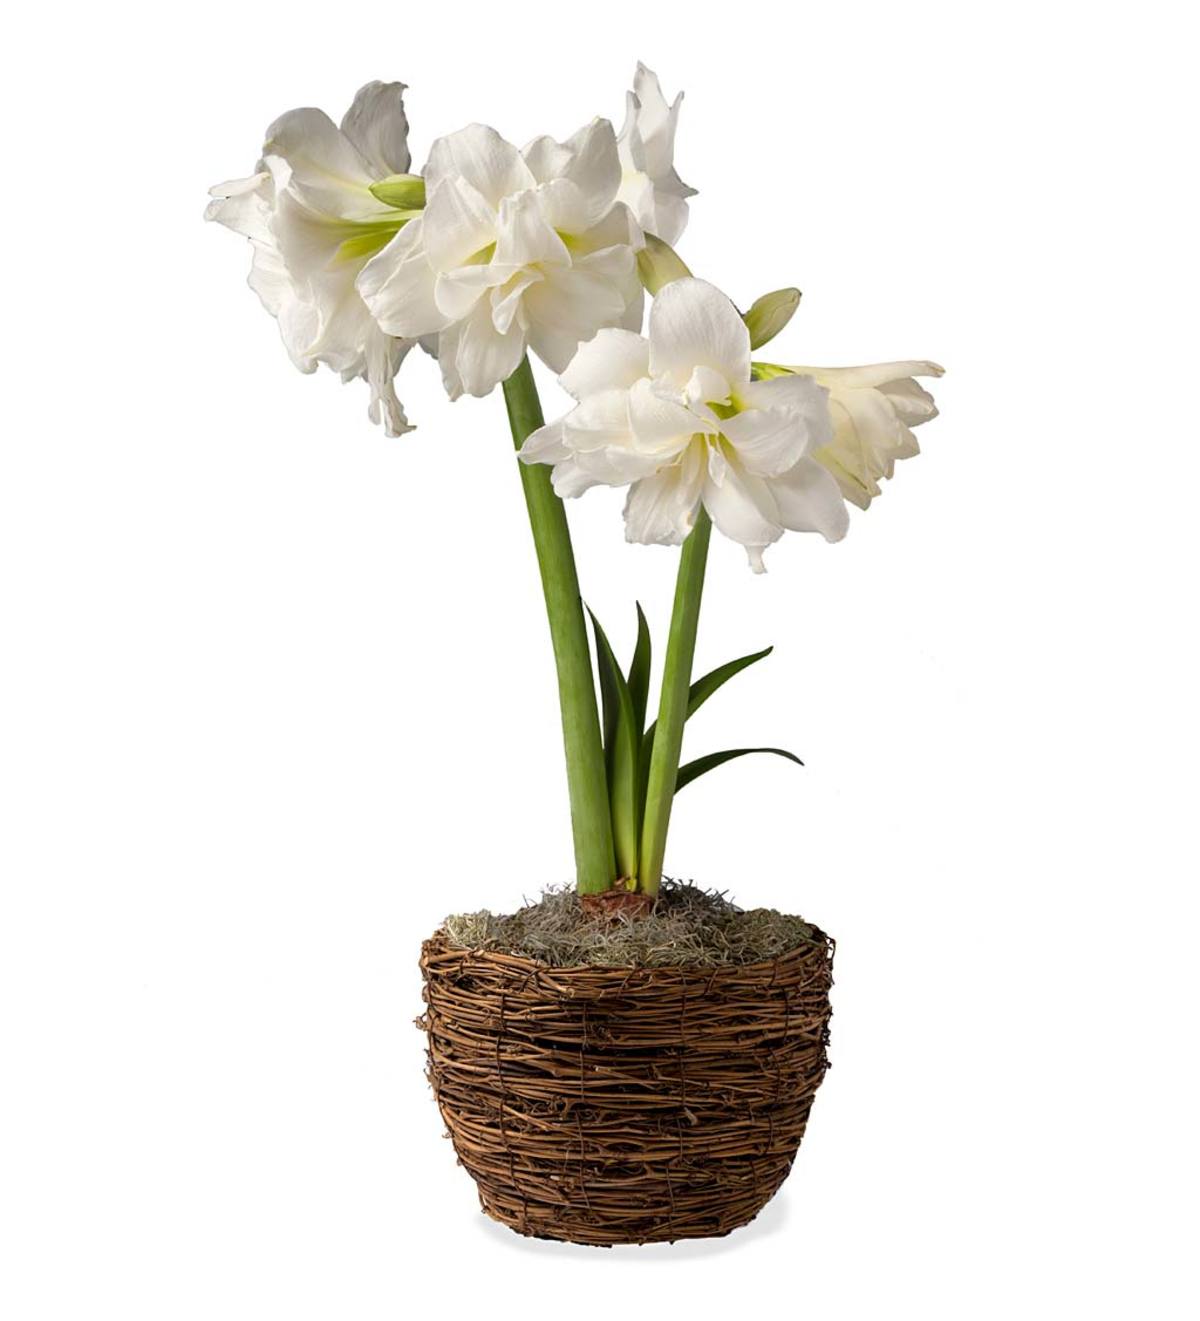 Alfresco White Amaryllis Bulb Garden Gift